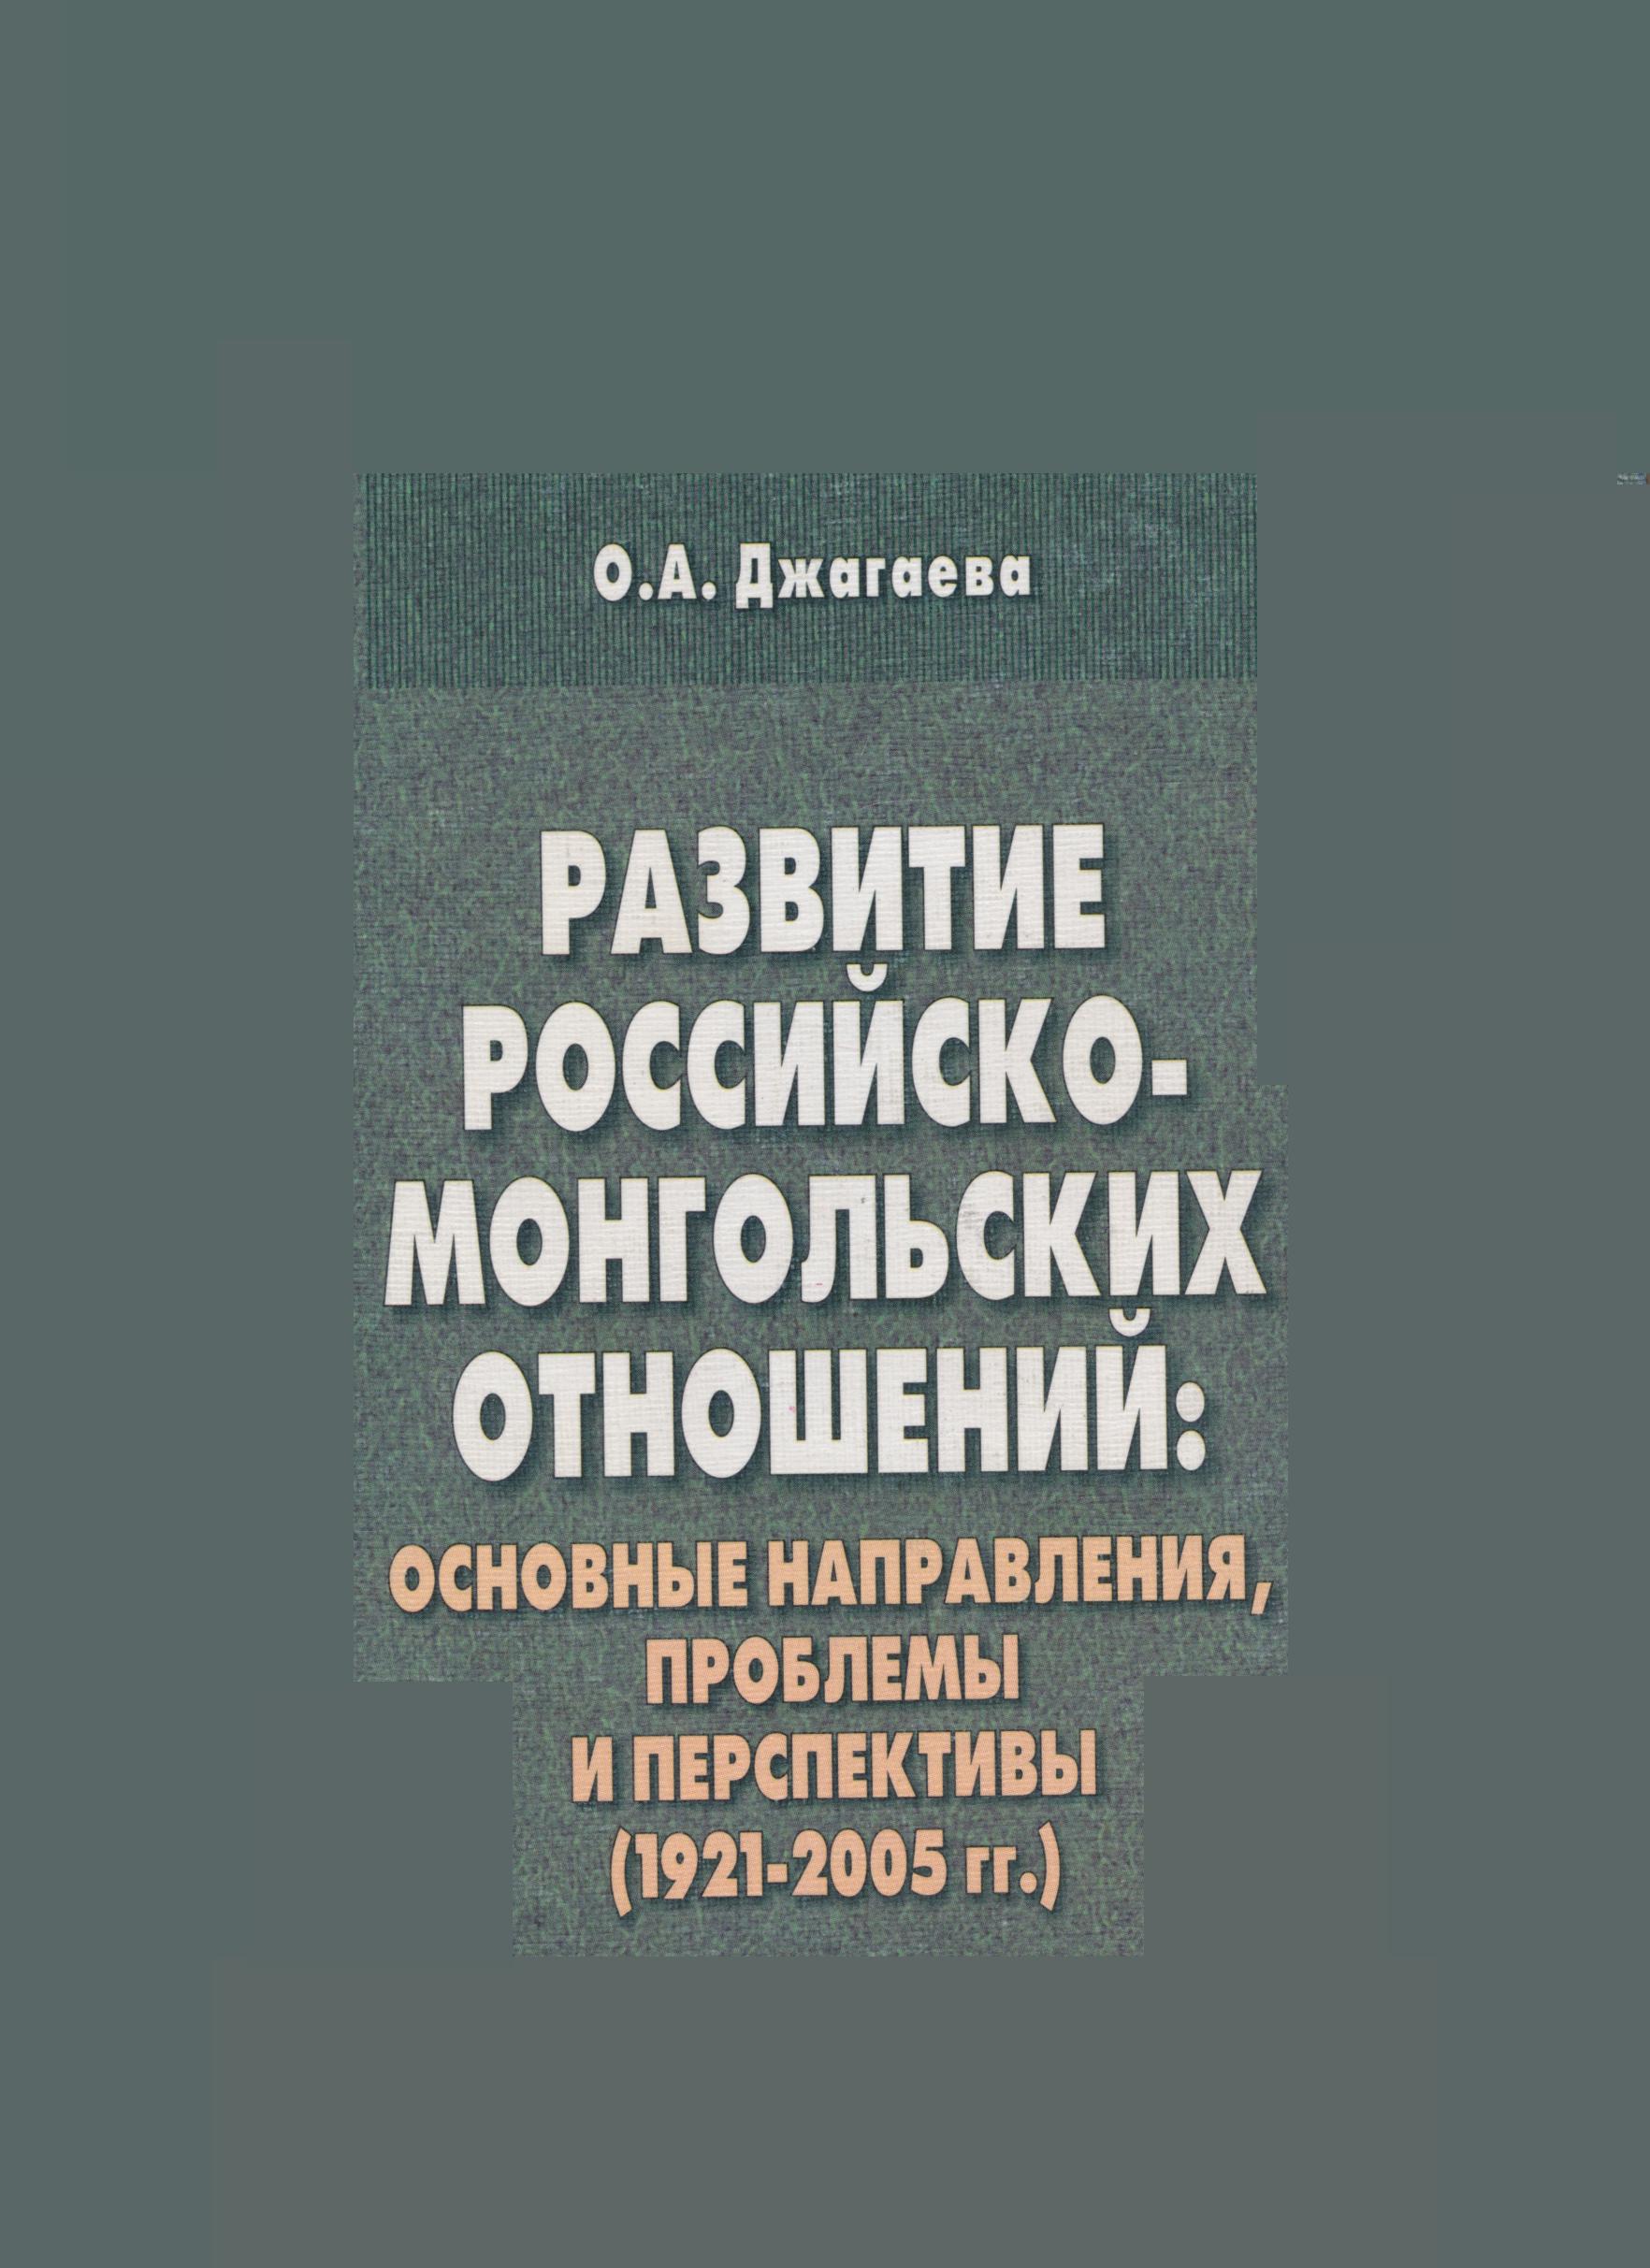 РАЗВИТИЕ РОССИЙСКО-МОНГОЛЬСКИХ ОТНОШЕНИЙ: ОСНОВНЫЕ НАПРАВЛЕНИЯ, ПРОБЛЕМЫ И ПЕРСПЕКТИВЫ (1921-2005 ГГ.)